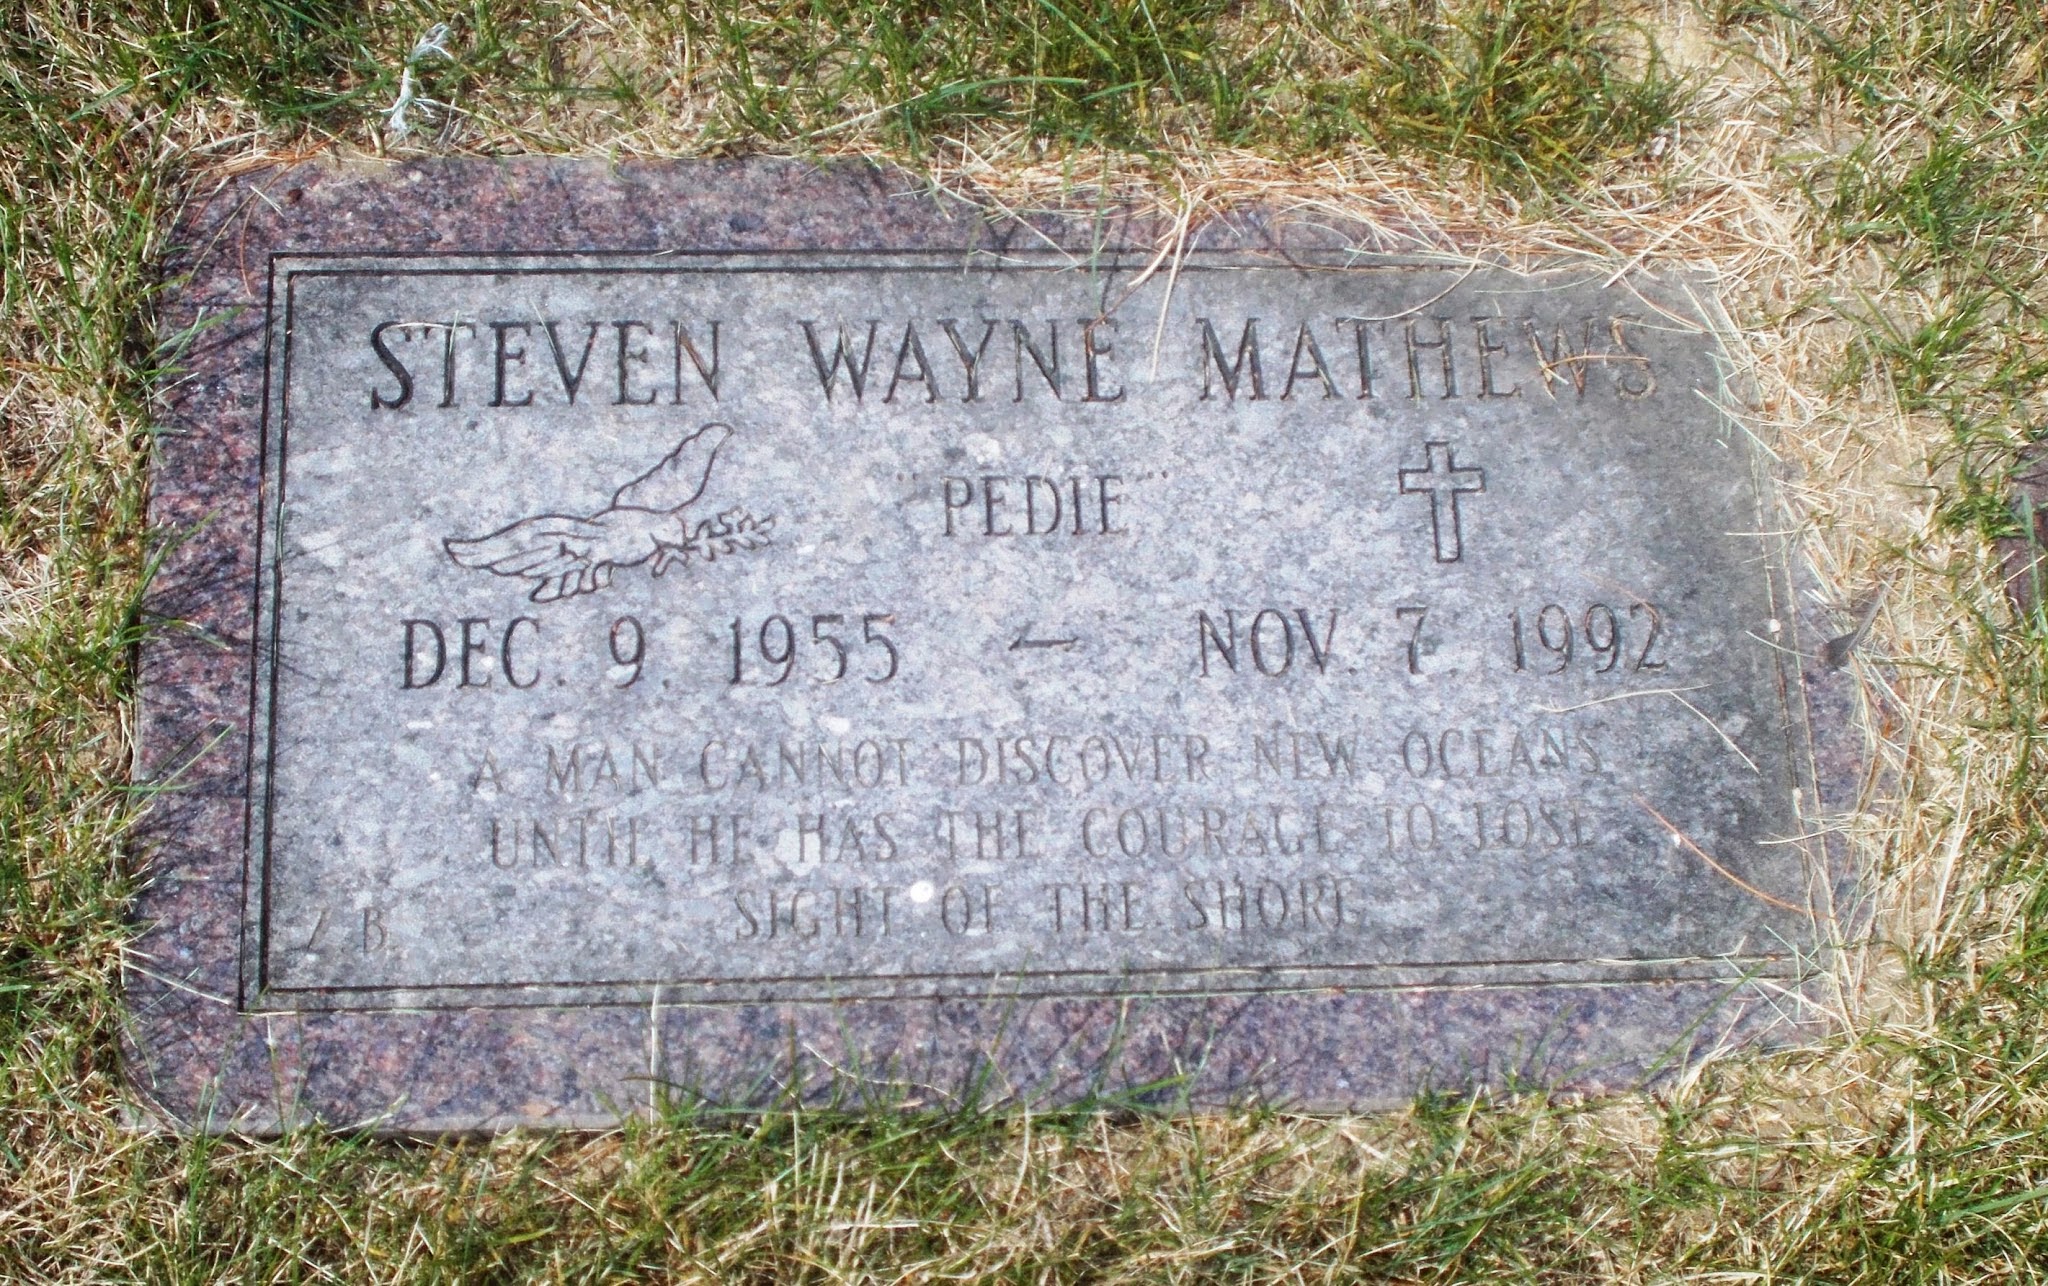 Steven Wayne "Pedie" Mathews